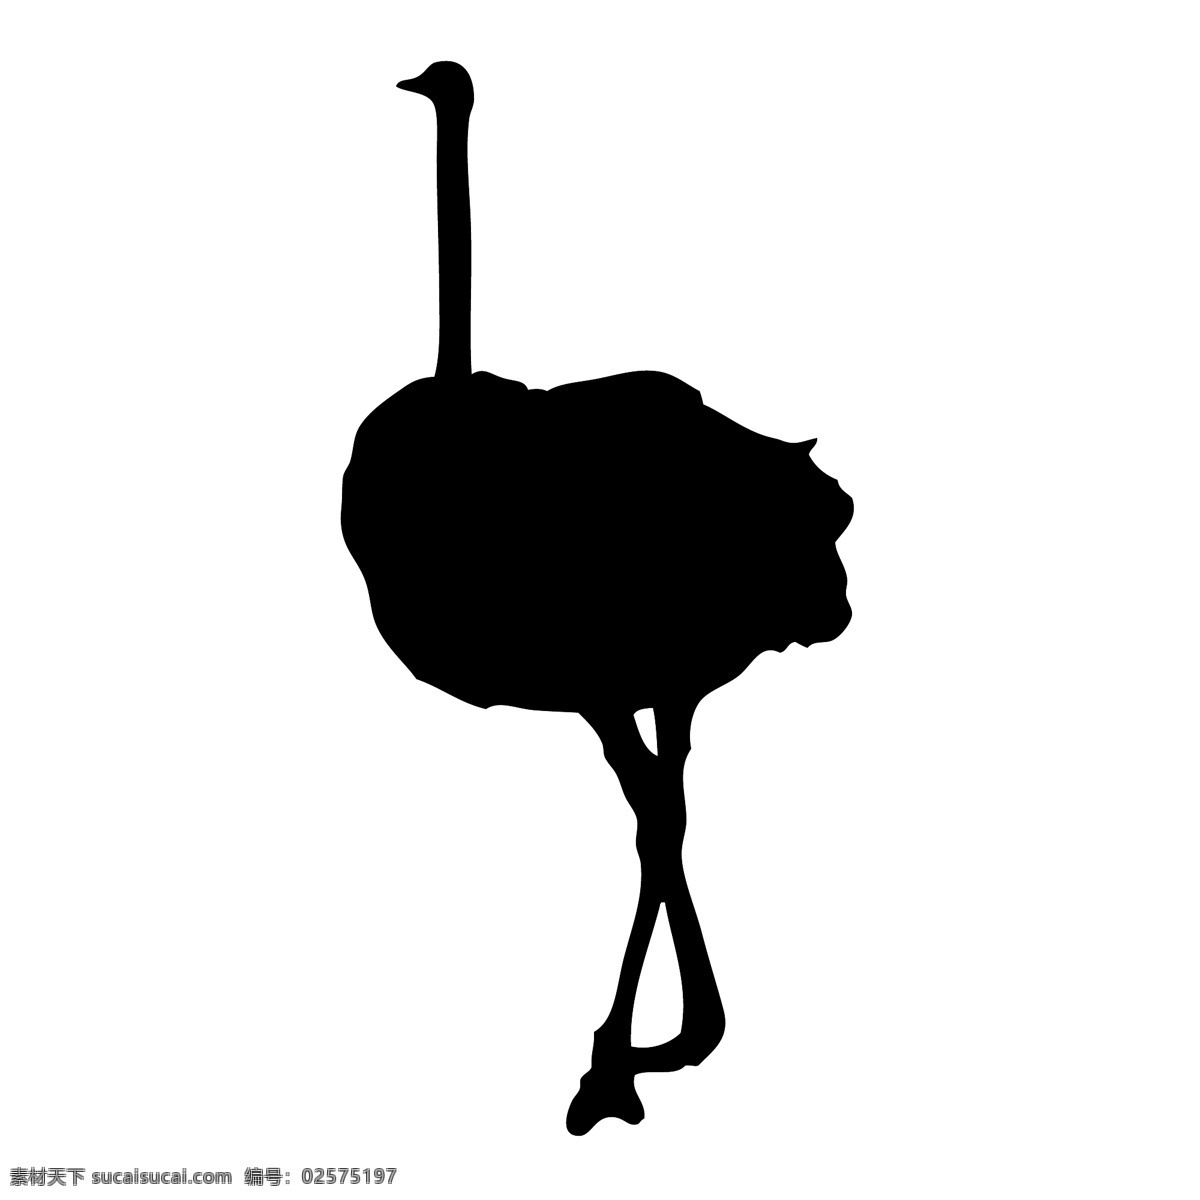 野生动物系列 鸵鸟 矢量图 动物世界 大自然 卡通 剪影 户外 野外 标本 图标 标识 标志 动物园 猛兽 丛林 草原 荒野 旷野 ostrich 矢量 动物 昆虫类 生物世界 野生动物